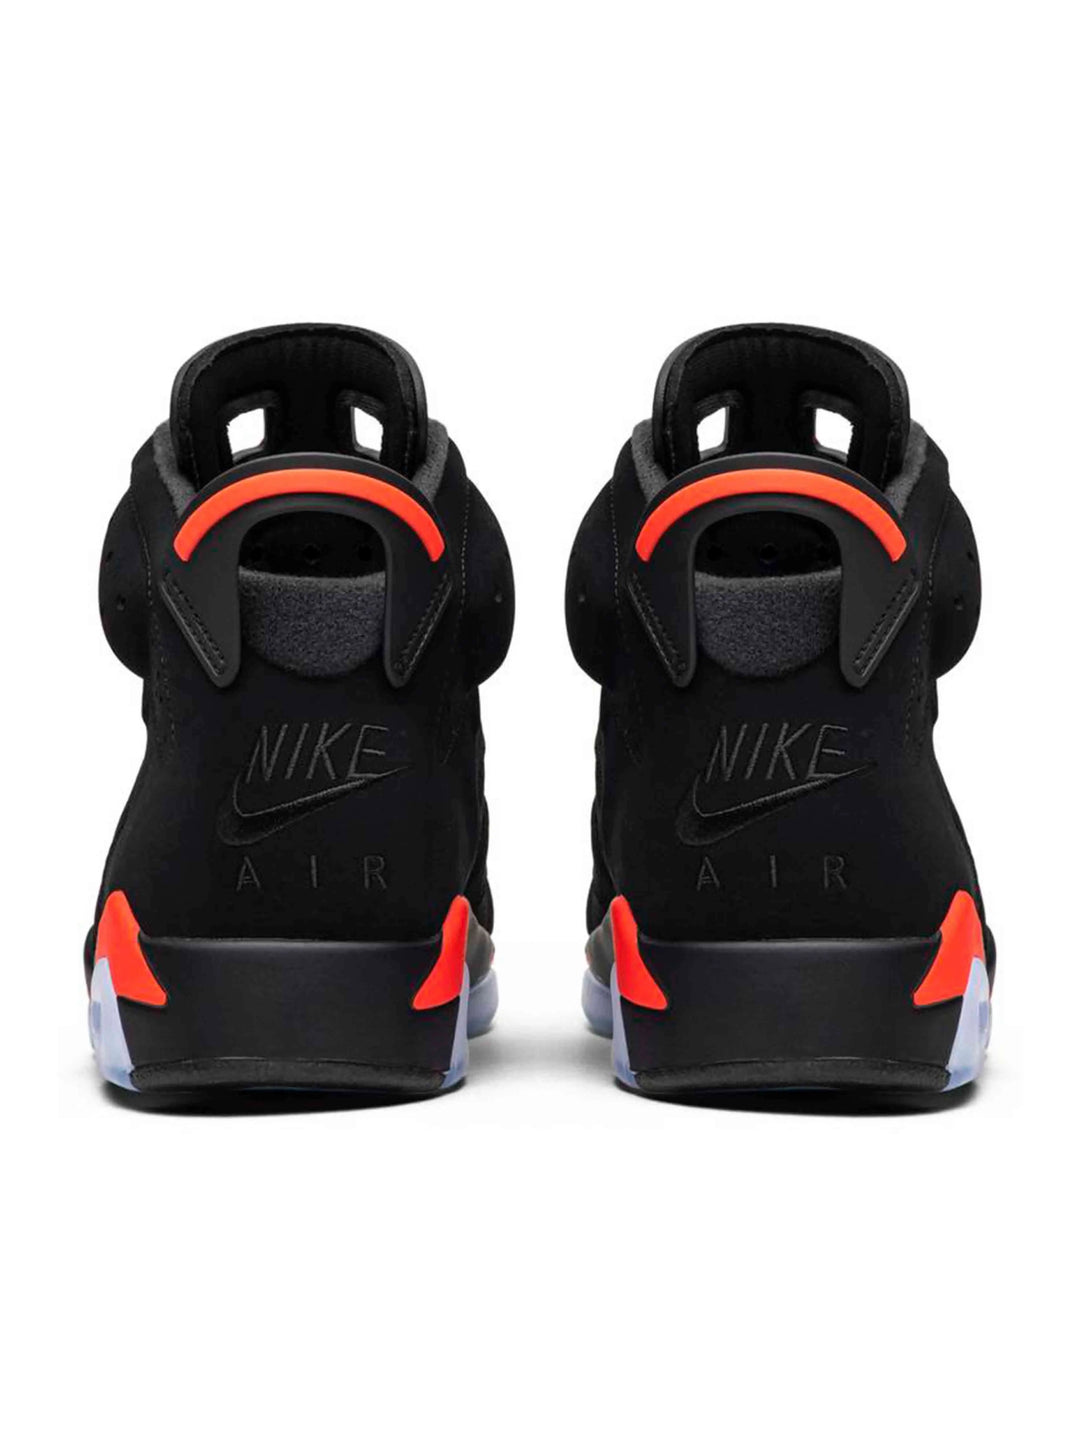 Nike Air Jordan 6 Retro Black Infrared [2019] Jordan Brand